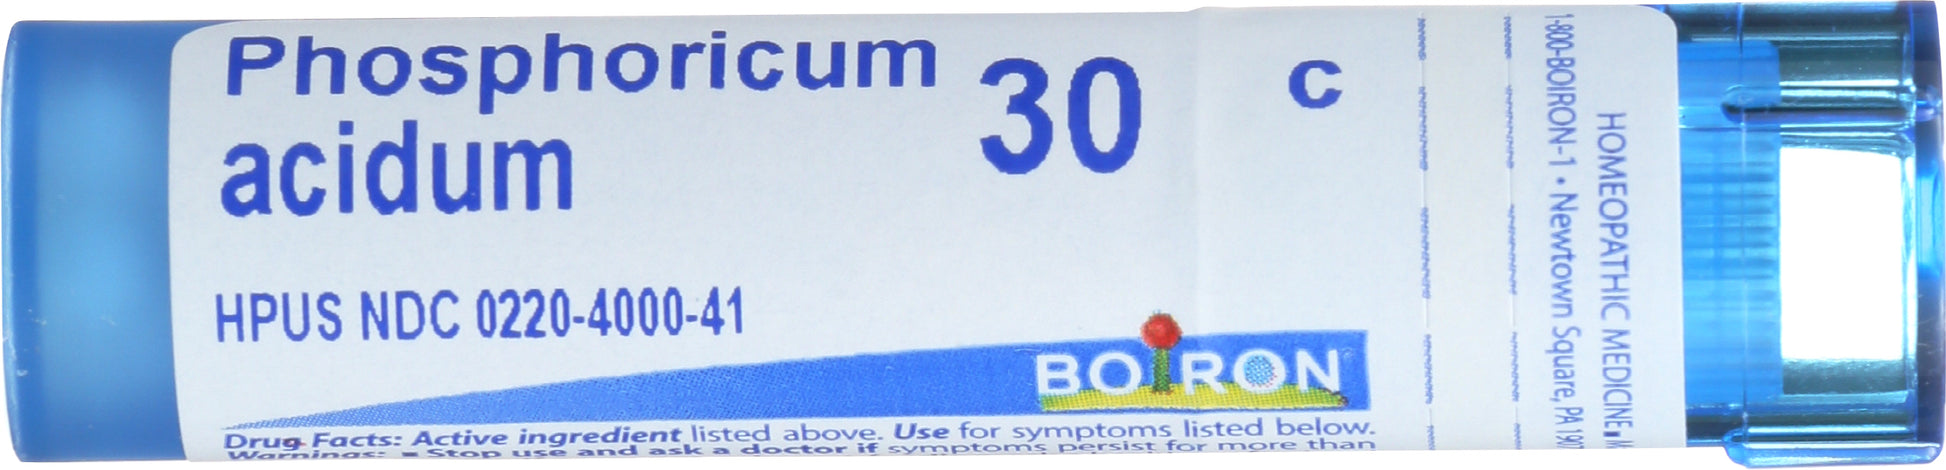 Boiron Phosphoricum acidum 30c